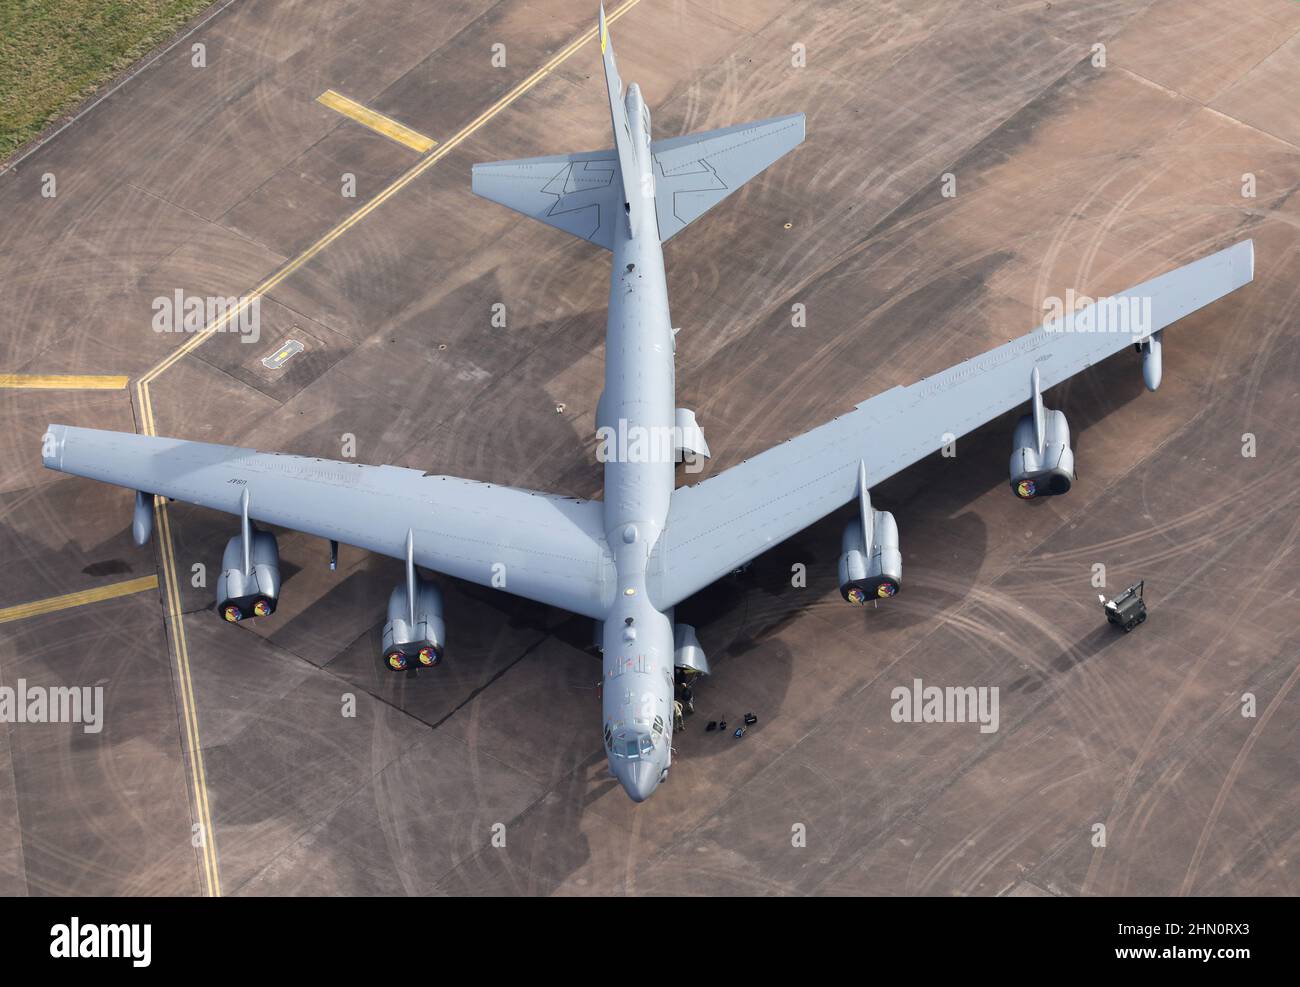 Photographie aérienne du Boeing B-52 de l'USAF peu après l'arrivée de 4 bombardiers à la RAF Fairford près de Cirencester au Royaume-Uni, alors que la tension monte en Ukraine. Banque D'Images